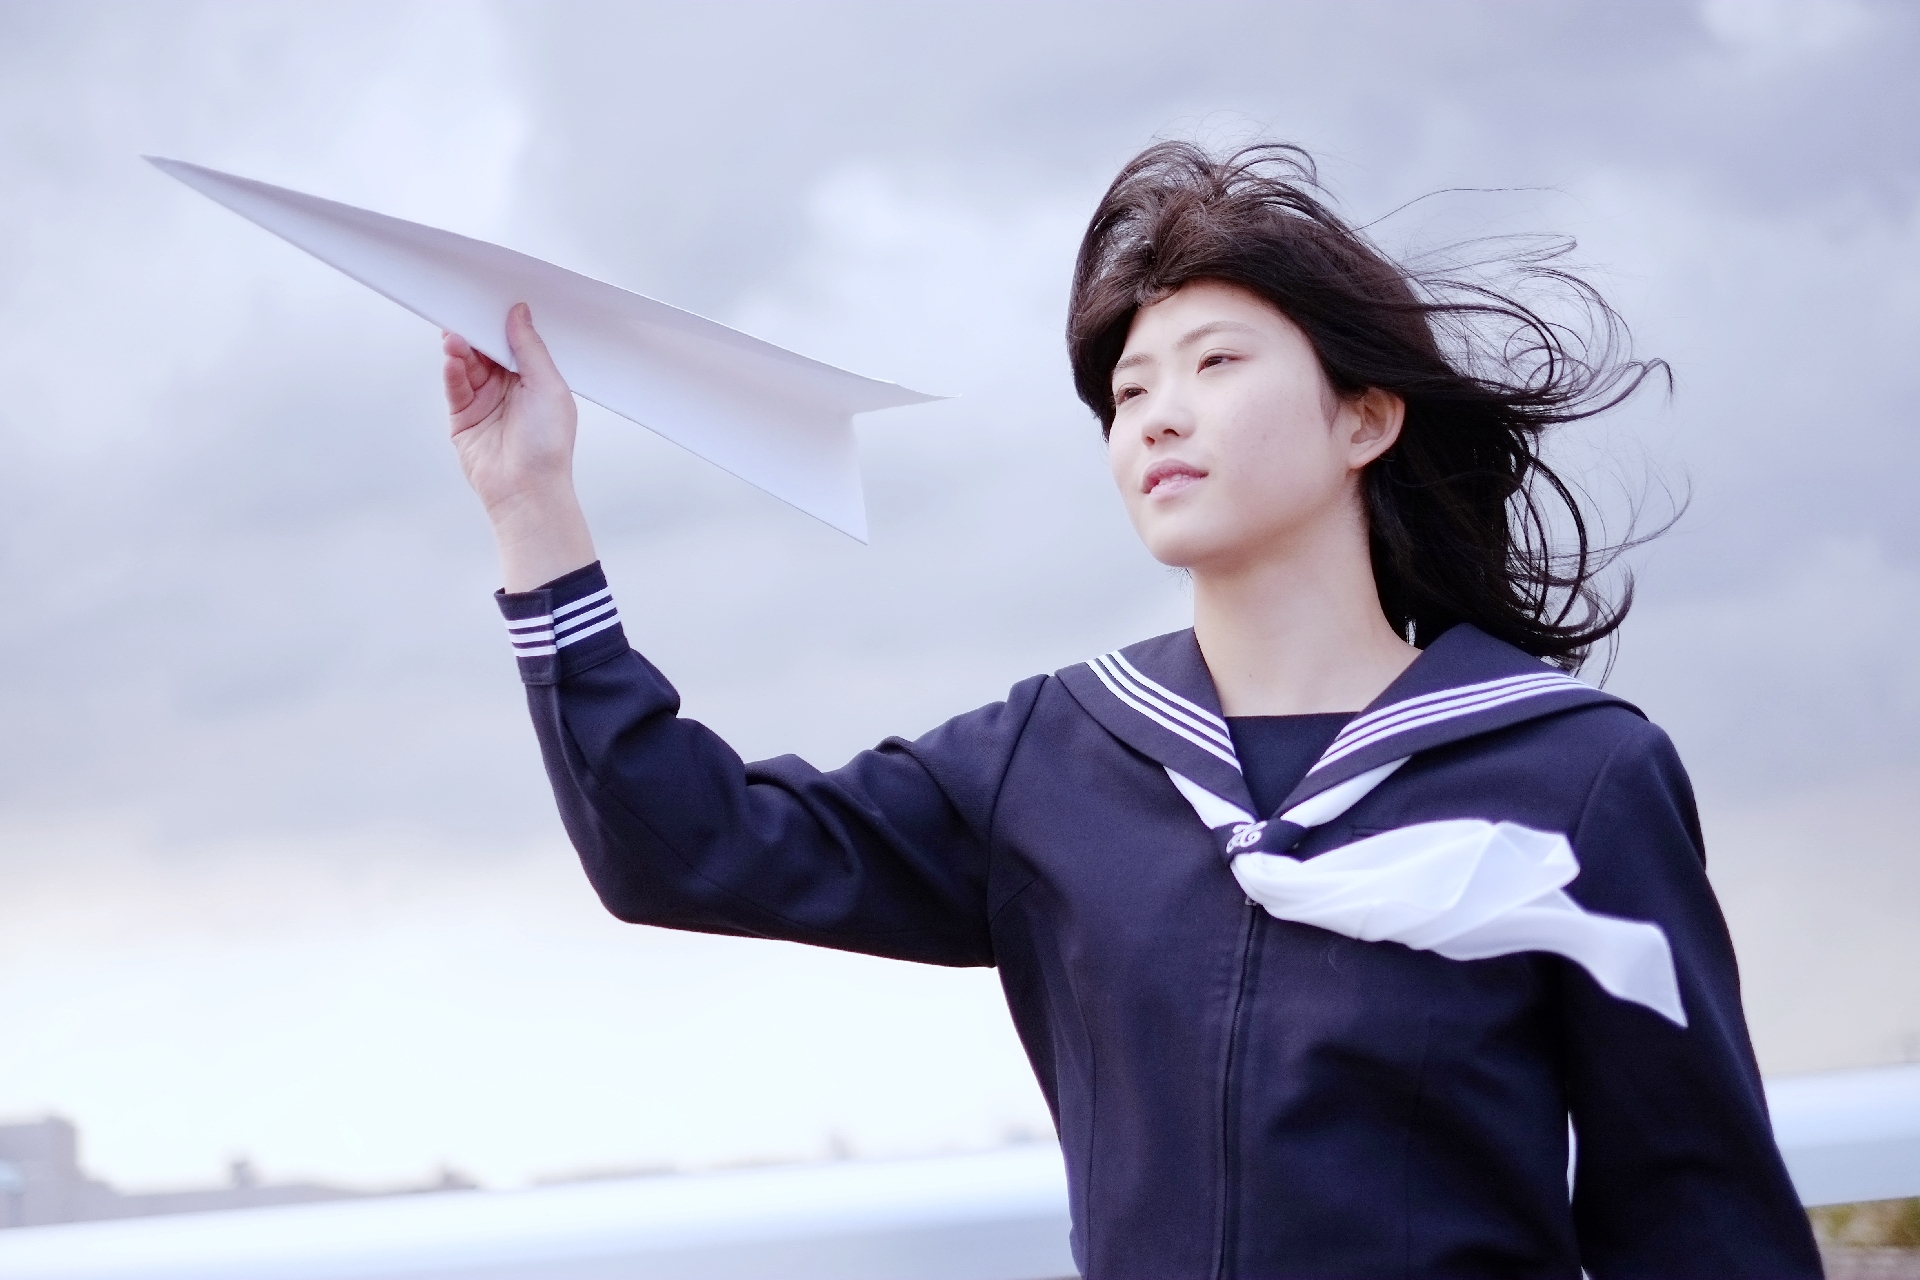 紙飛行機を飛ばす女子高生